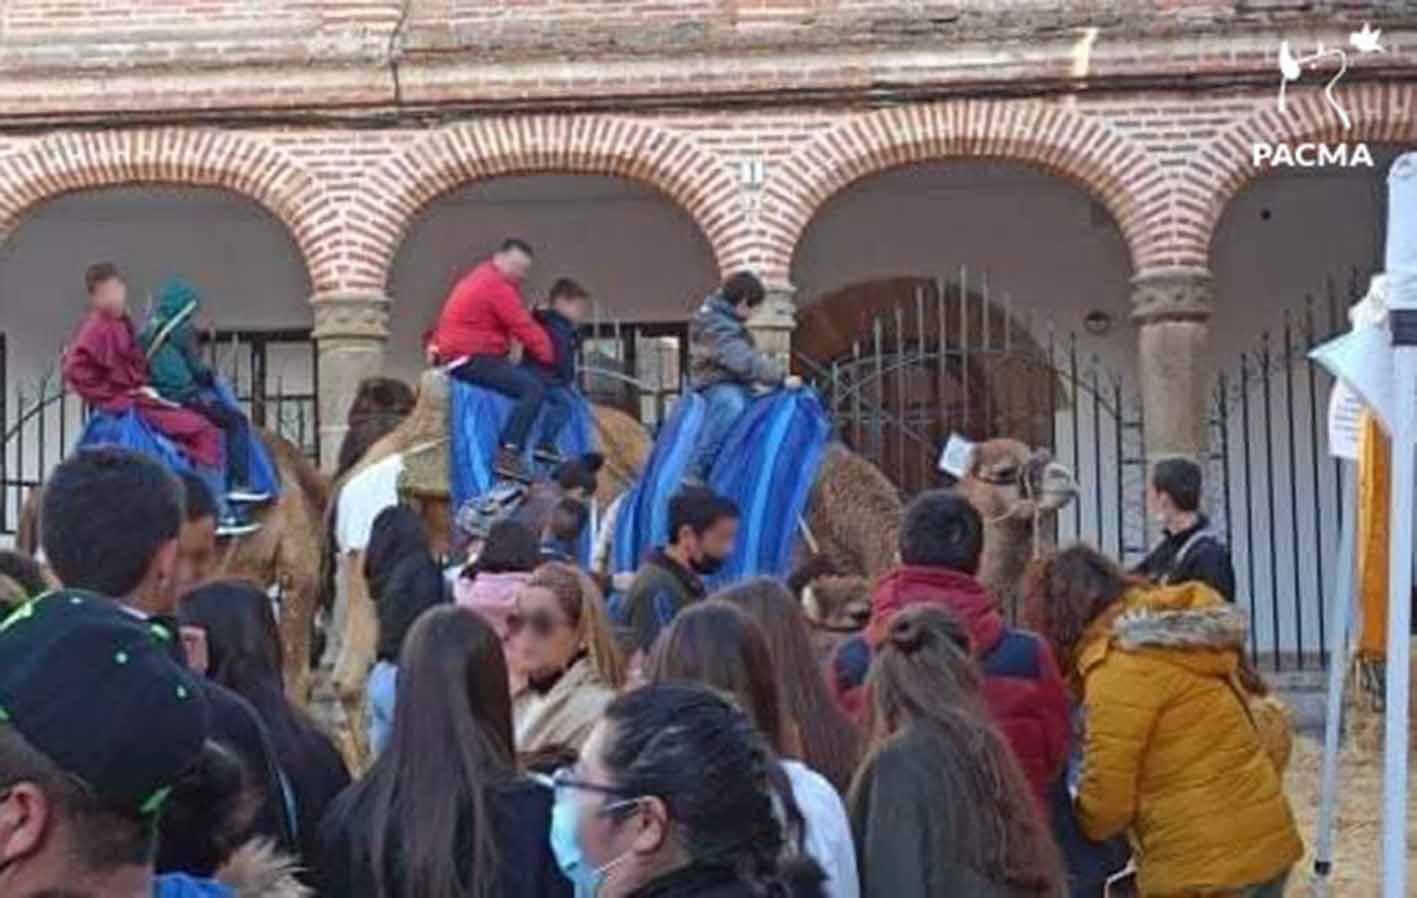 Foto de Pacma en la que se ve a personas montando de dos en dos sobre los camellos.